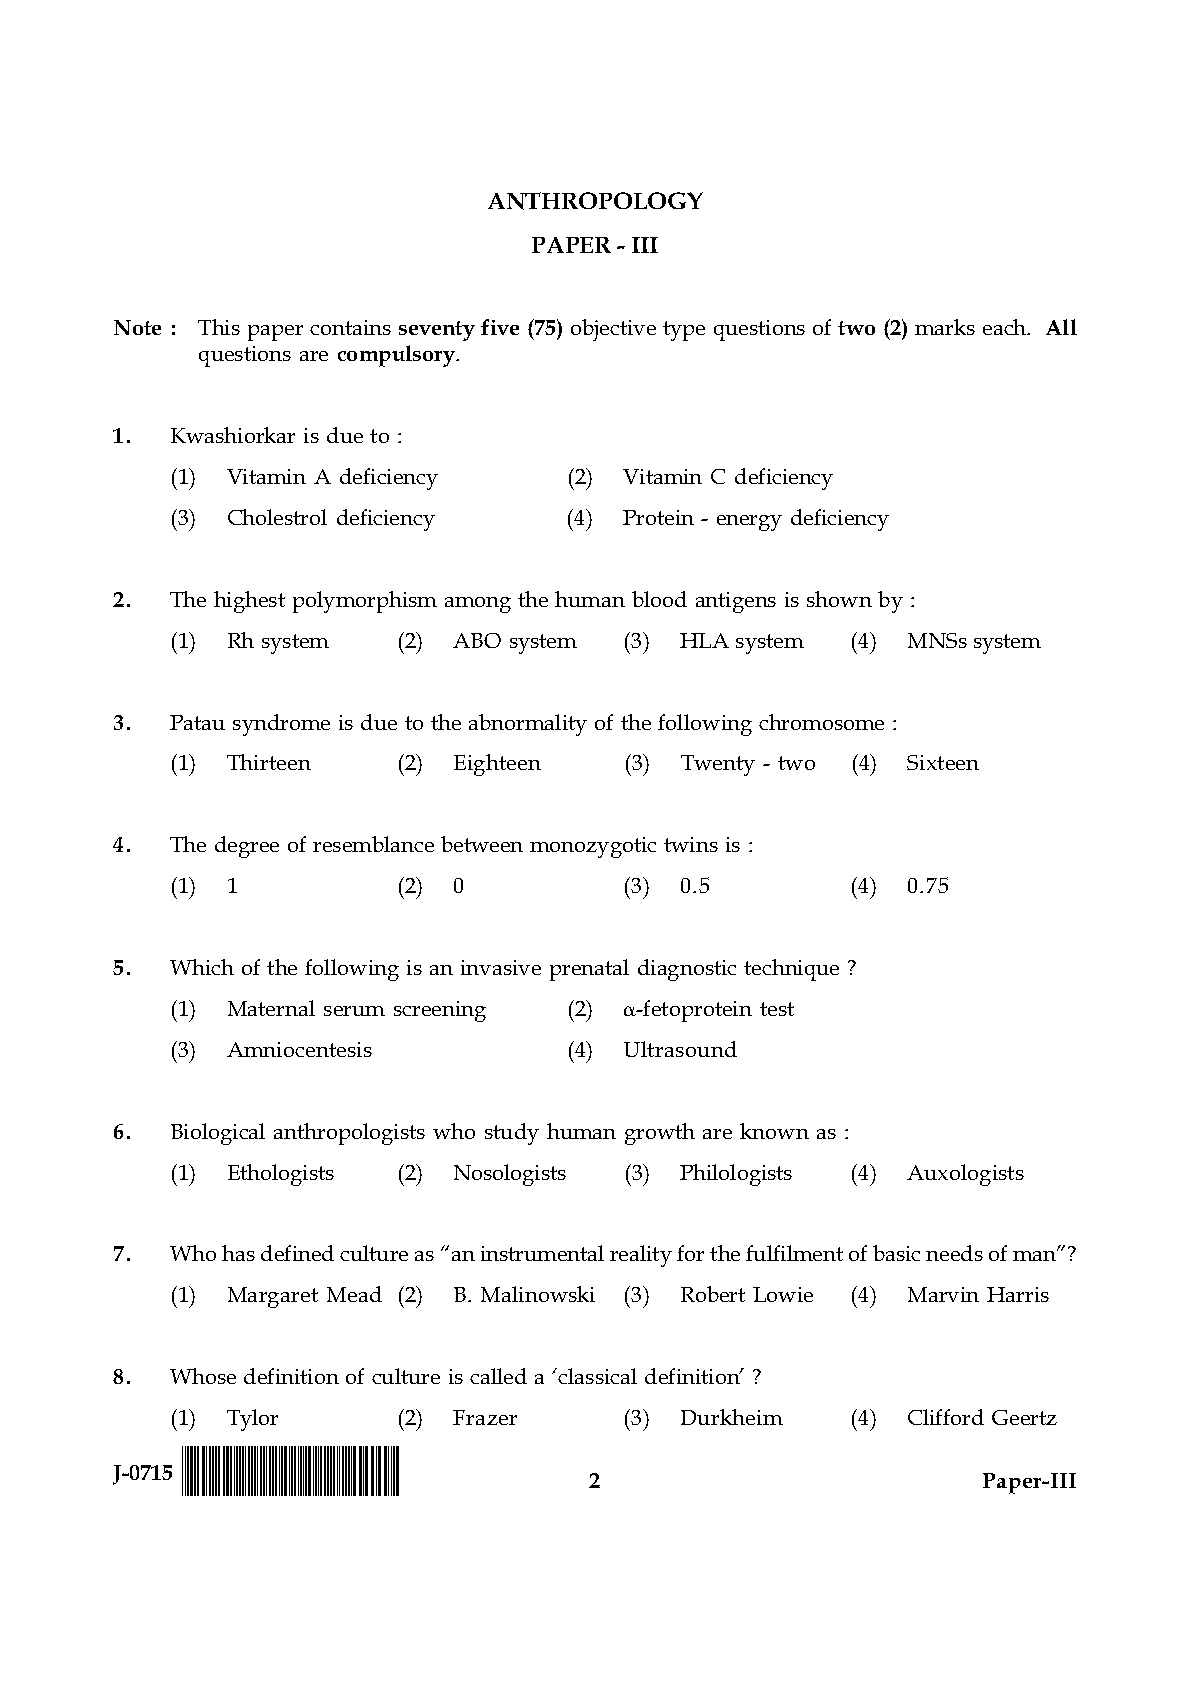 UGC NET Anthropology Question Paper III June 2015 2